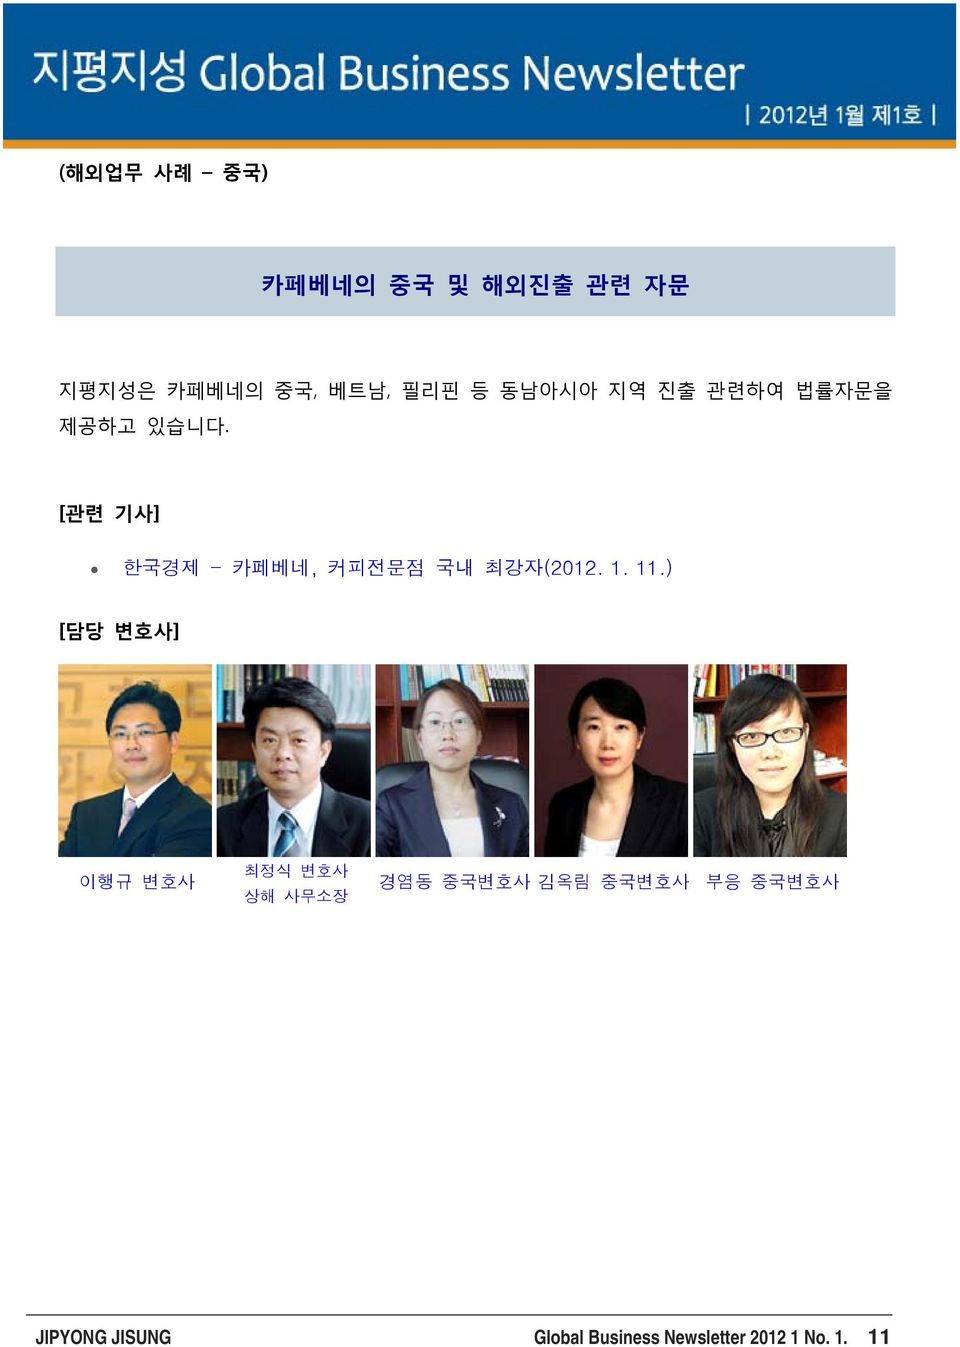 [관련 기사] 한국경제 - 카페베네, 커피전문점 국내 최강자(2012. 1. 11.